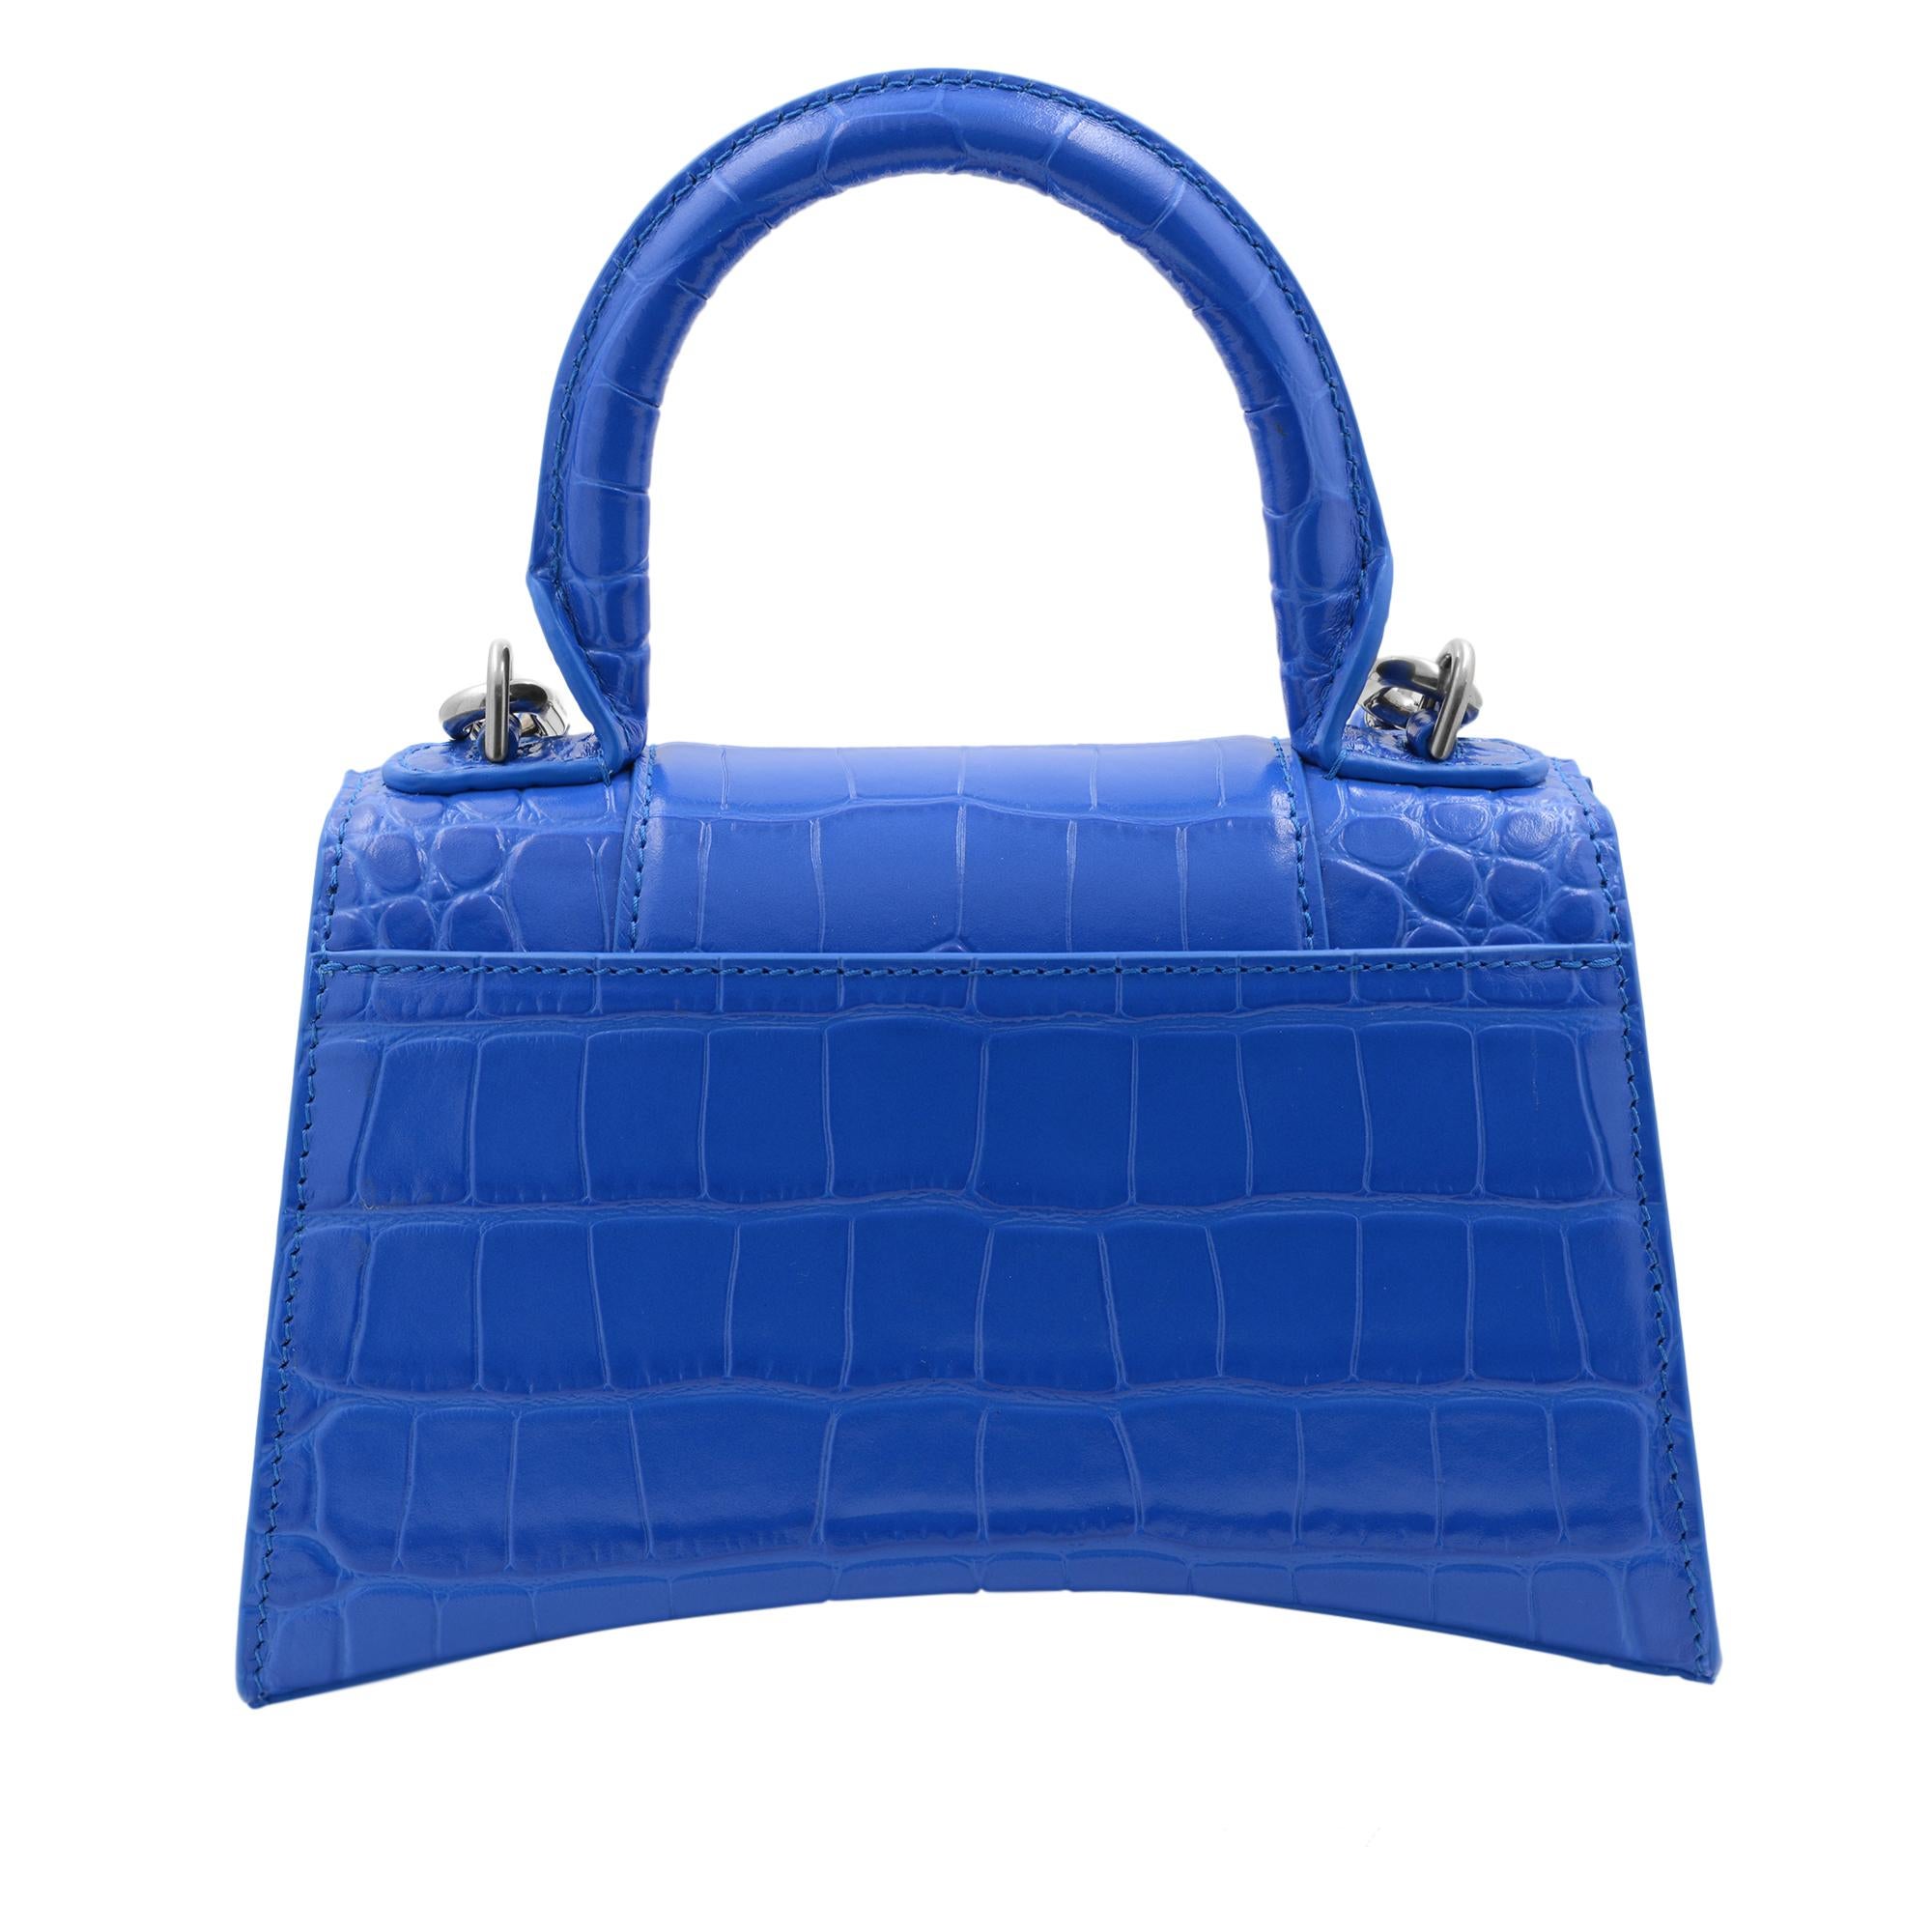 balenciaga hourglass bag blue